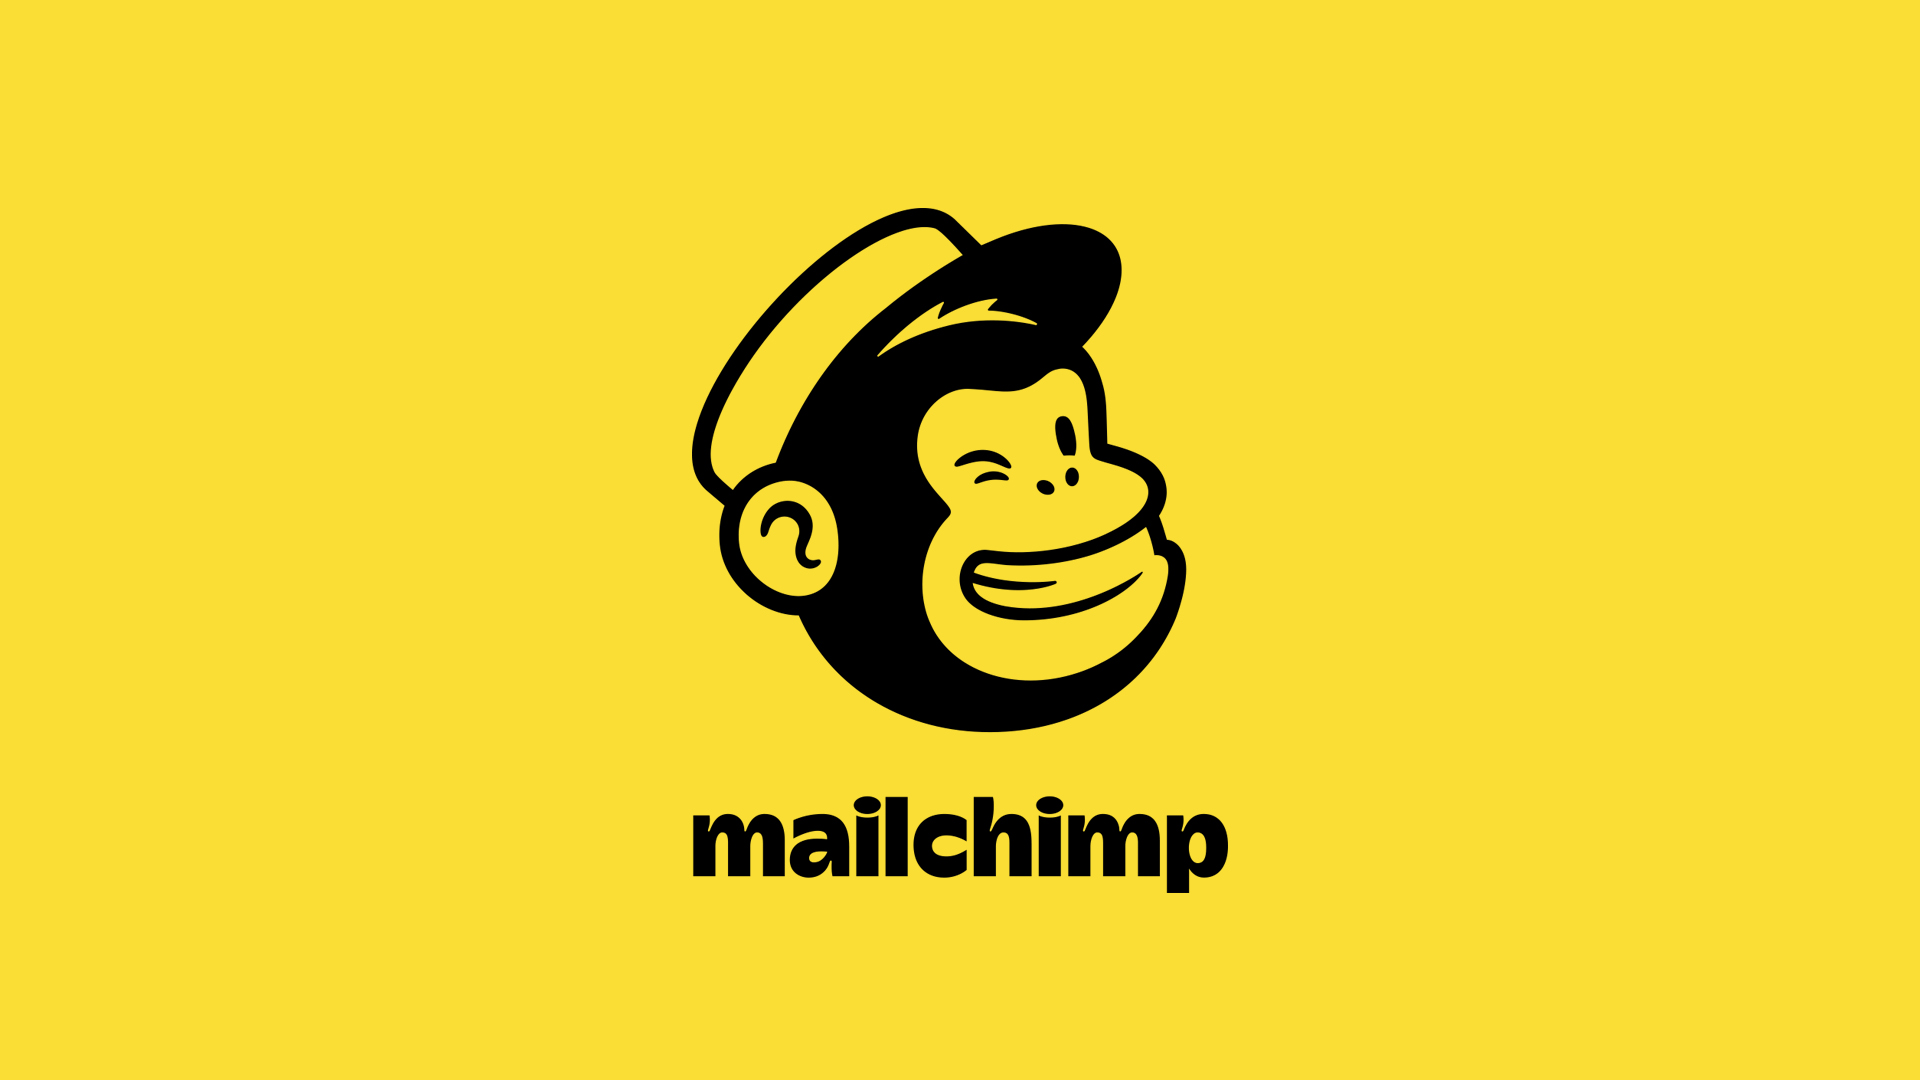 MailChimpBlklogo-Yellow1920px.jpg